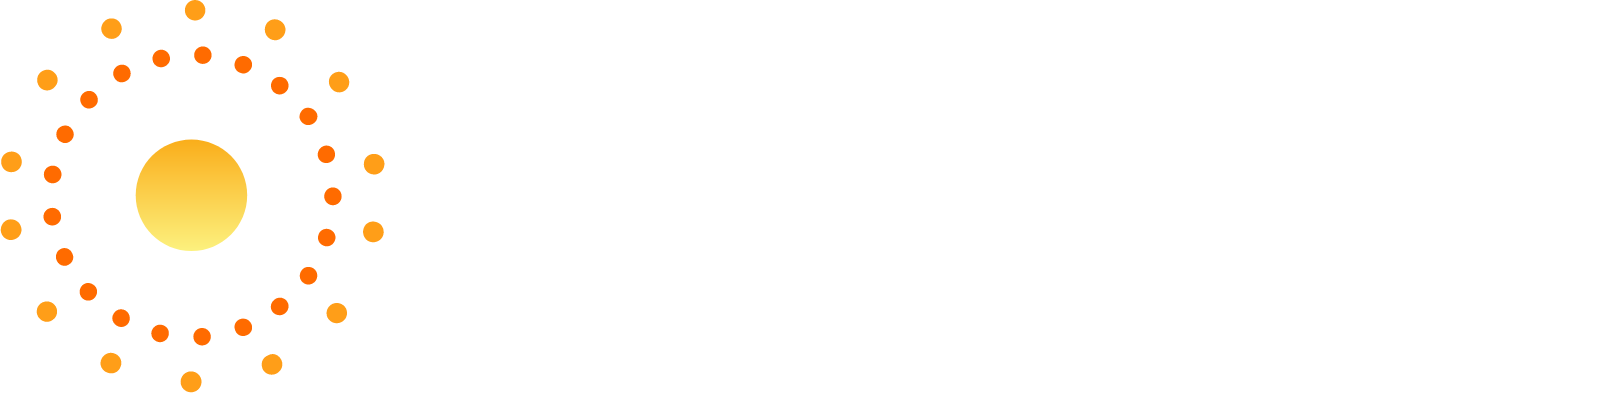 Heliogen Logo groß für dunkle Hintergründe (transparentes PNG)